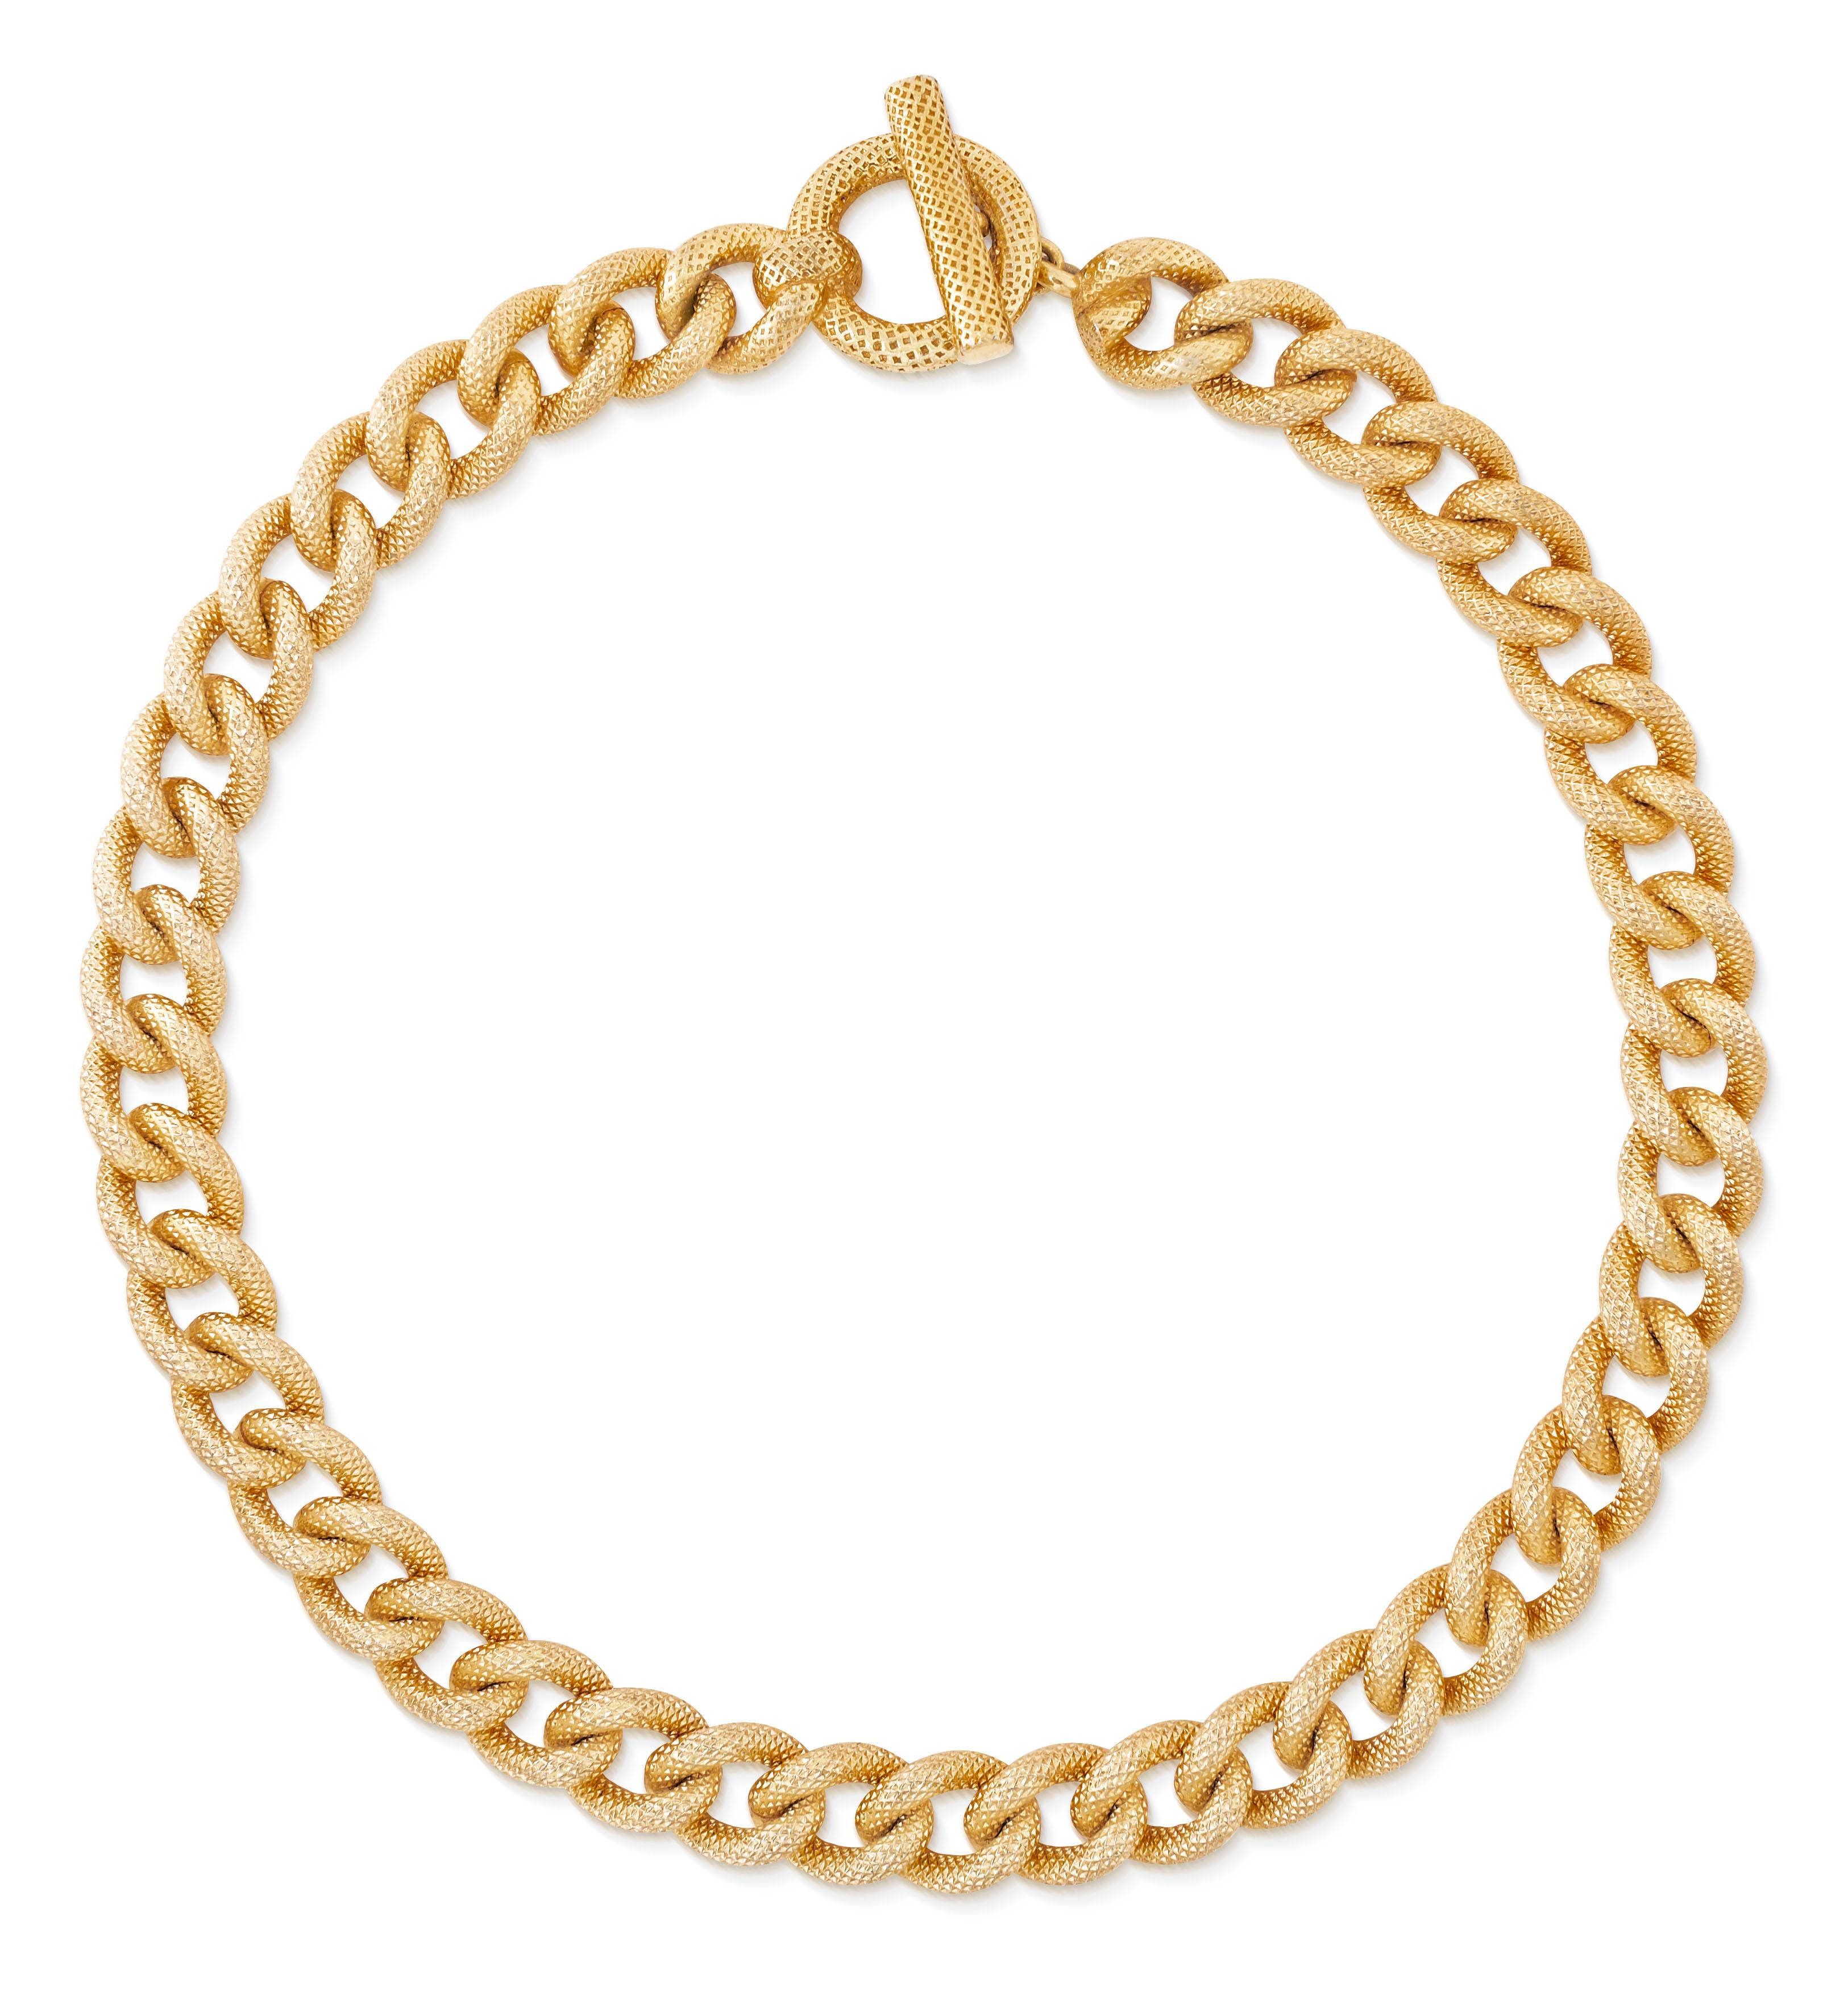 Vintage 1980s Christian Dior texturierte Panzerkette Halskette in Gold Platte.  Diese Halskette besteht aus klobigen Gliedern mit einer einzigartigen diamantgemusterten Textur, die ihr ein glänzendes, halbmattes Finish verleiht.  Ring und